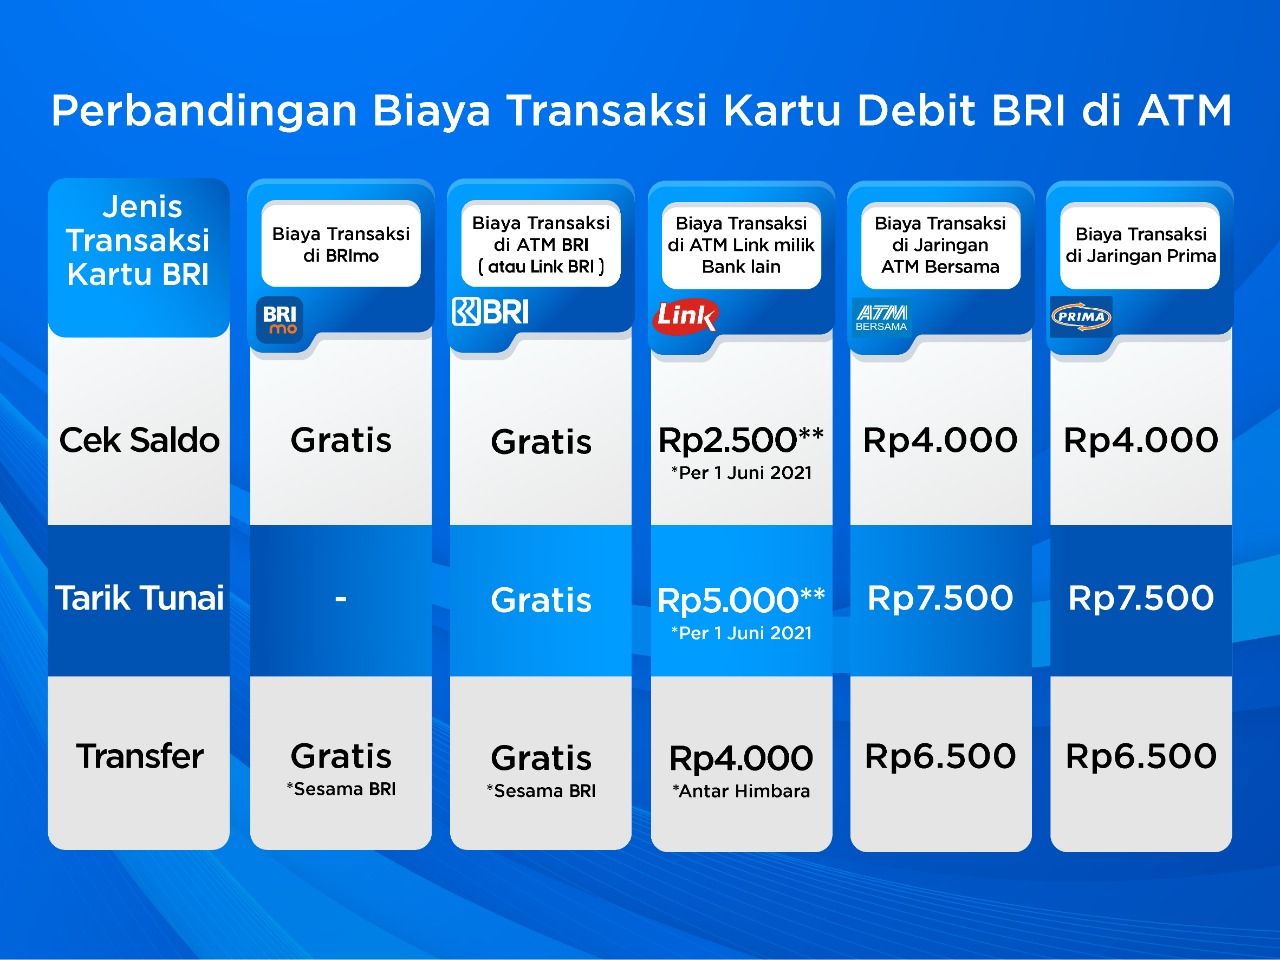 Ilustrasi perbandingan biaya transaksi kartu debit BRI di ATM.